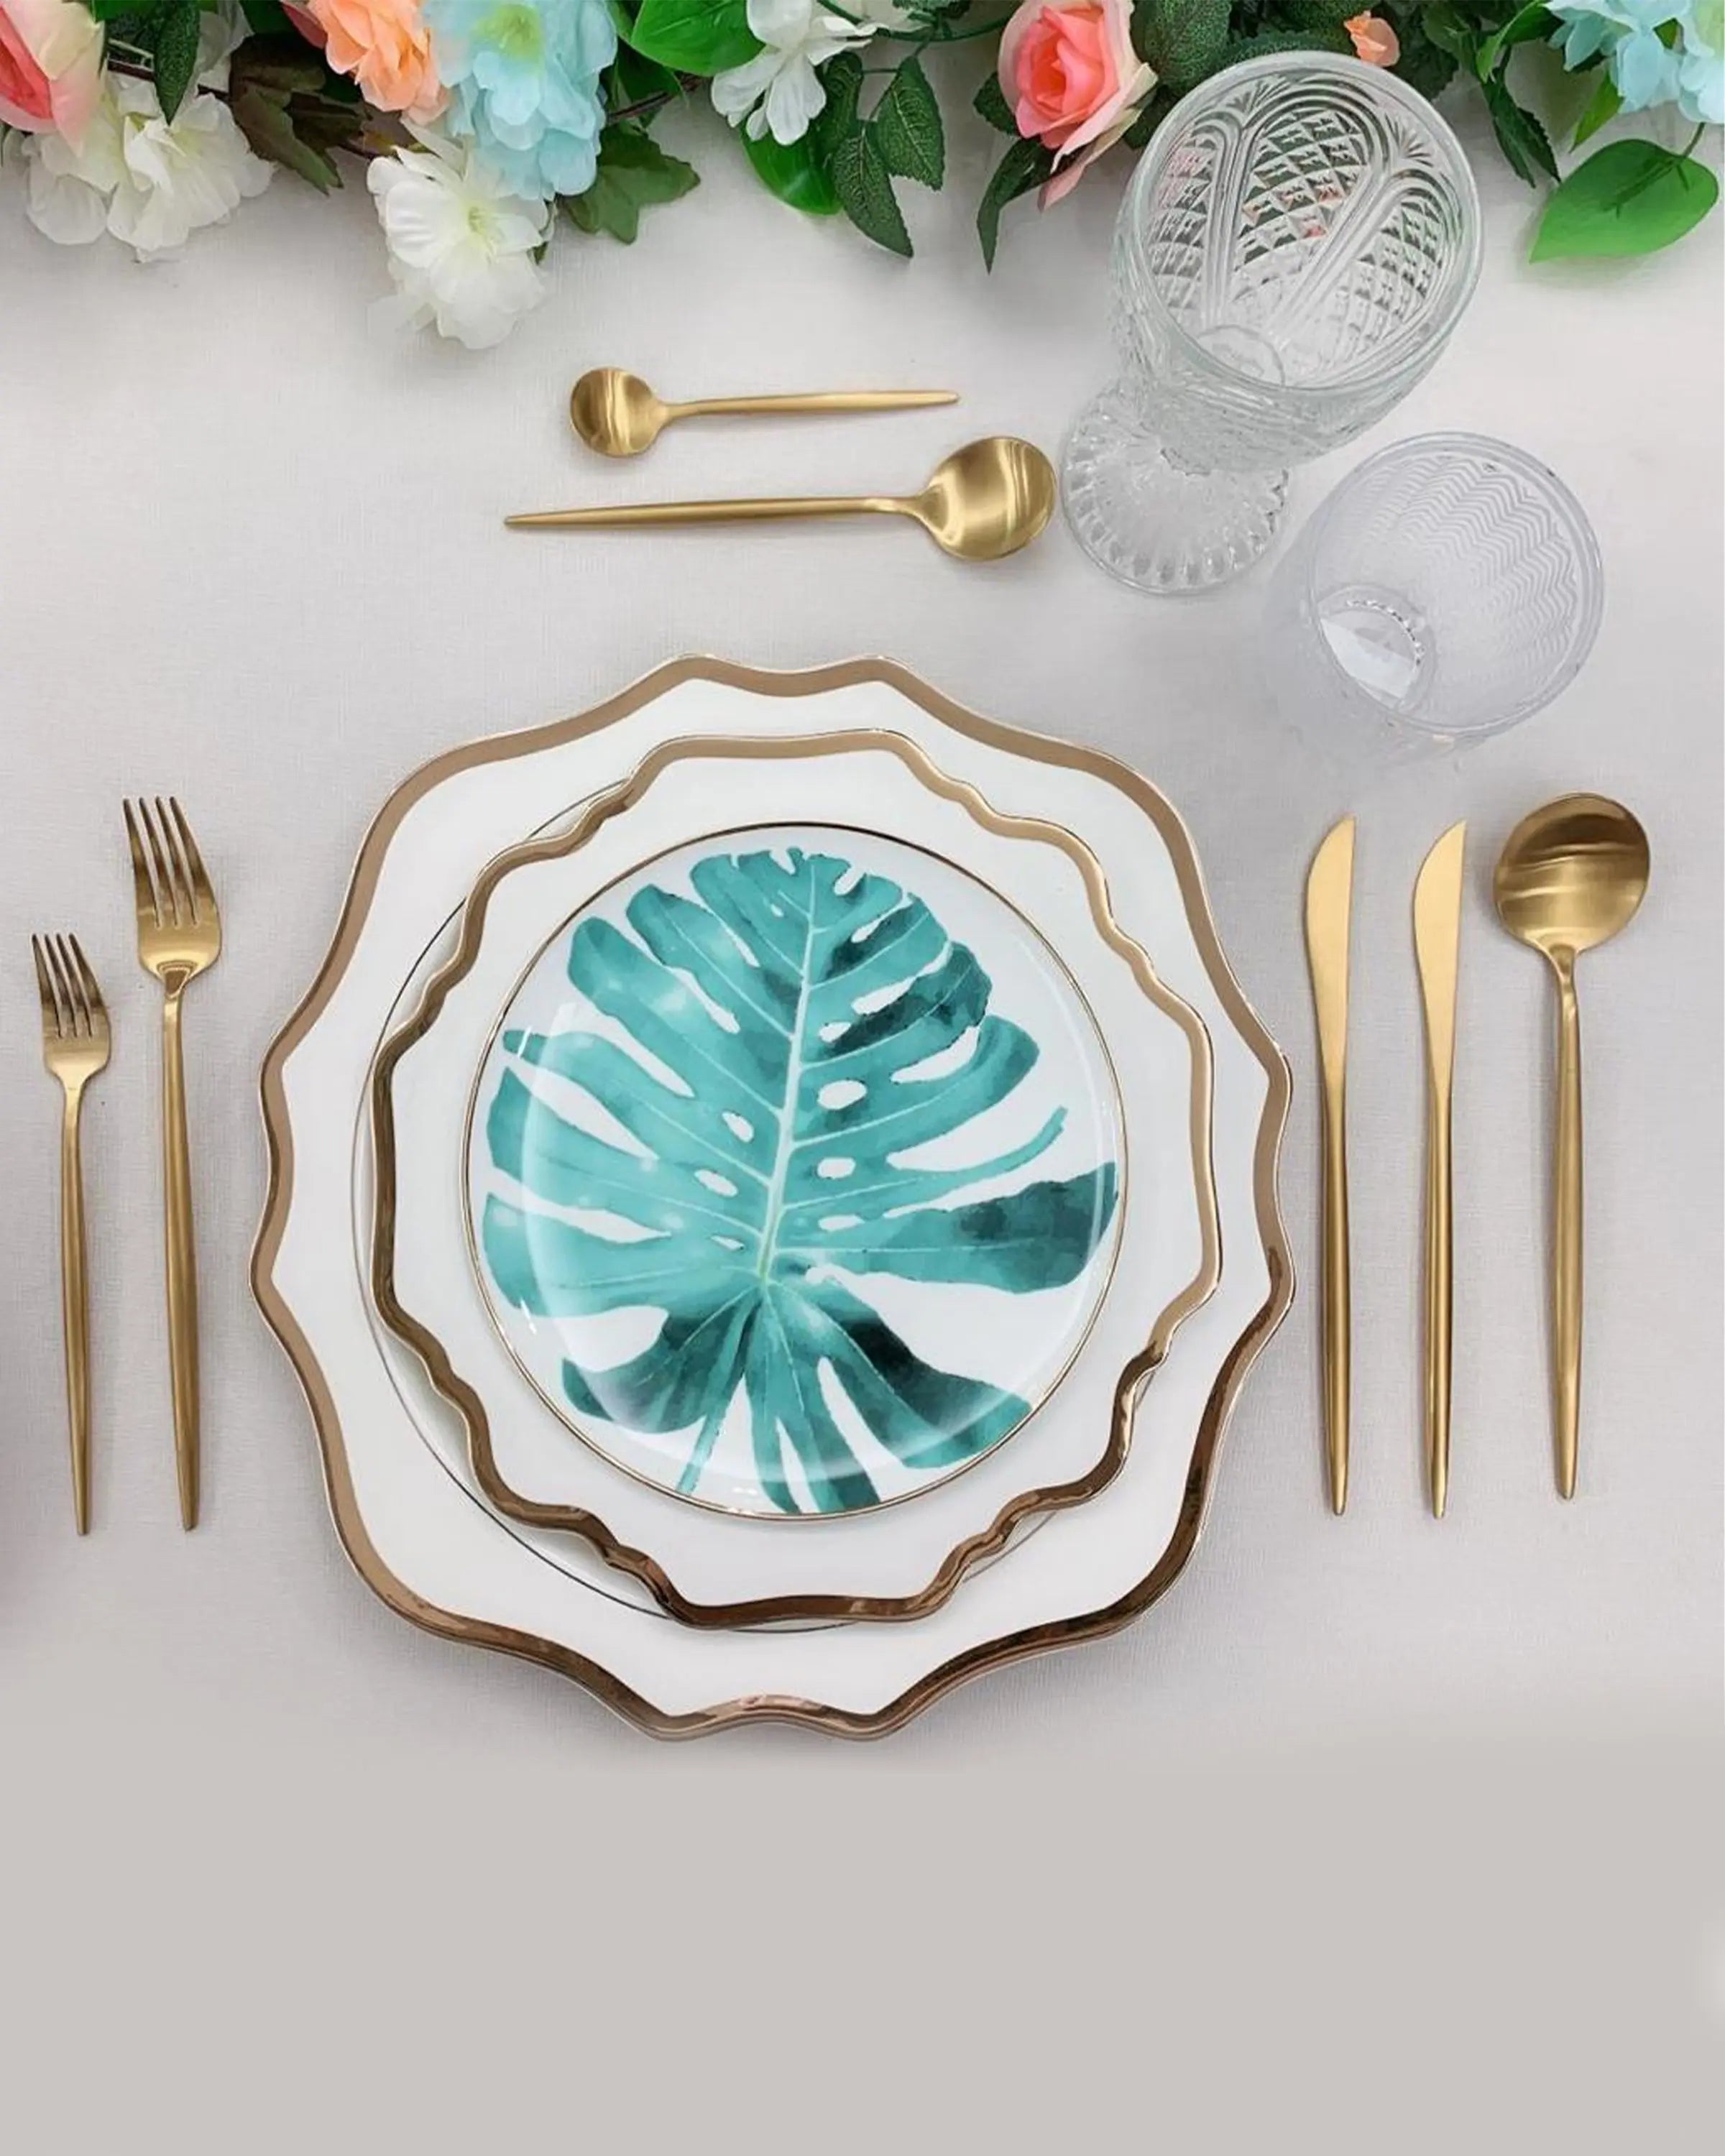 Big Leaf Design Blue White Porcelain Plates Online